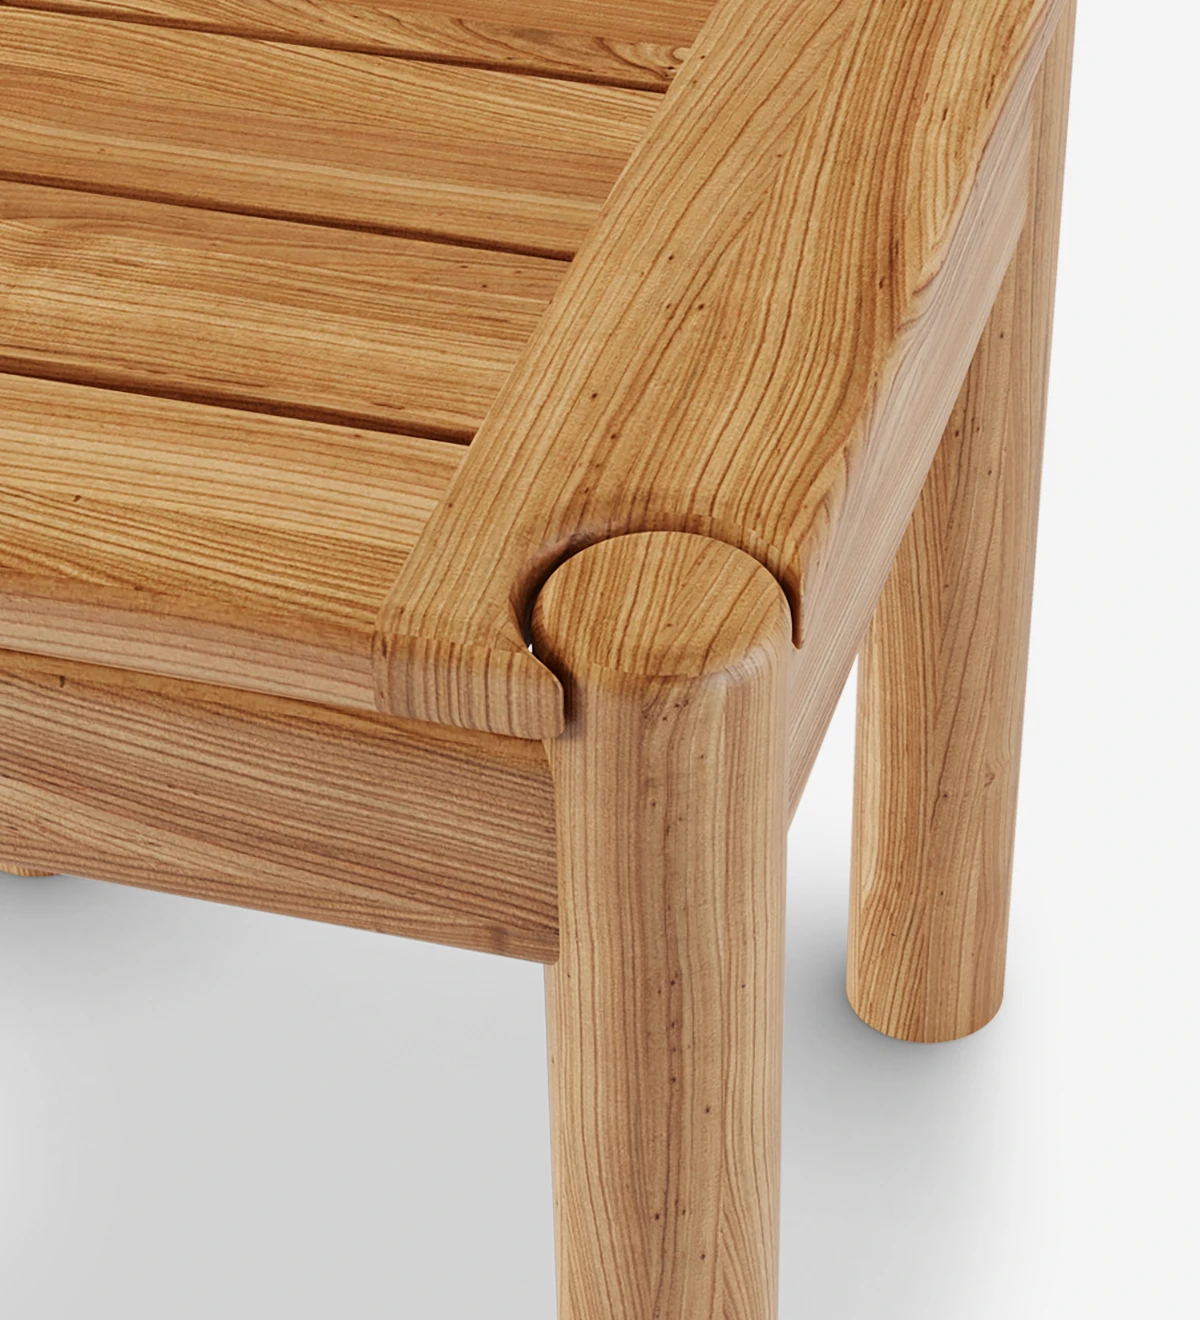 Mesa de apoio quadrada em madeira natural